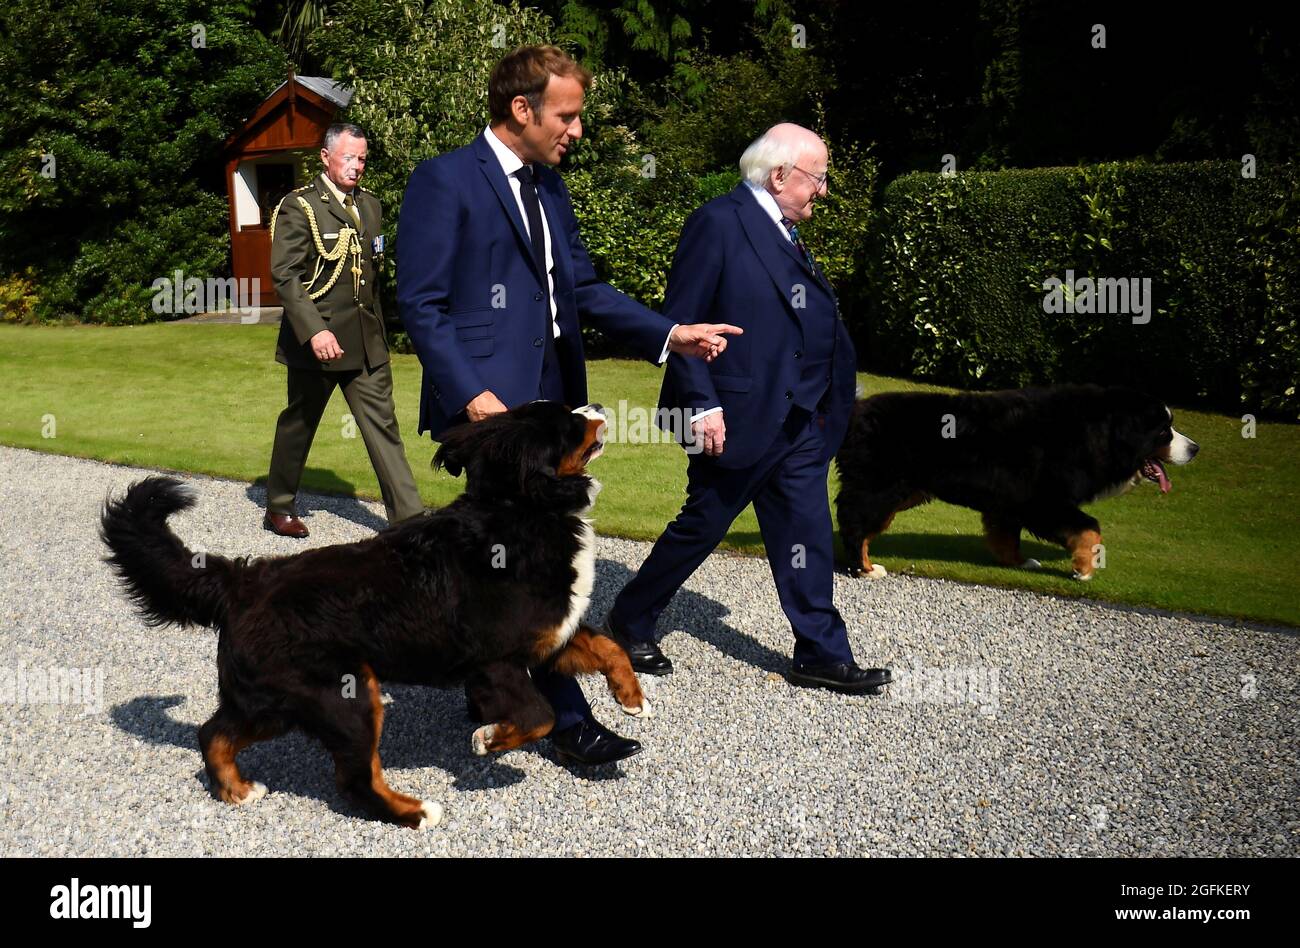 Los perros del presidente irlandés Michael D. Higgins caminan alrededor de  él y del presidente francés Emmanuel Macron mientras se reúnen en Aras an  Uachtarain, Dublín, Irlanda, el 26 de agosto de